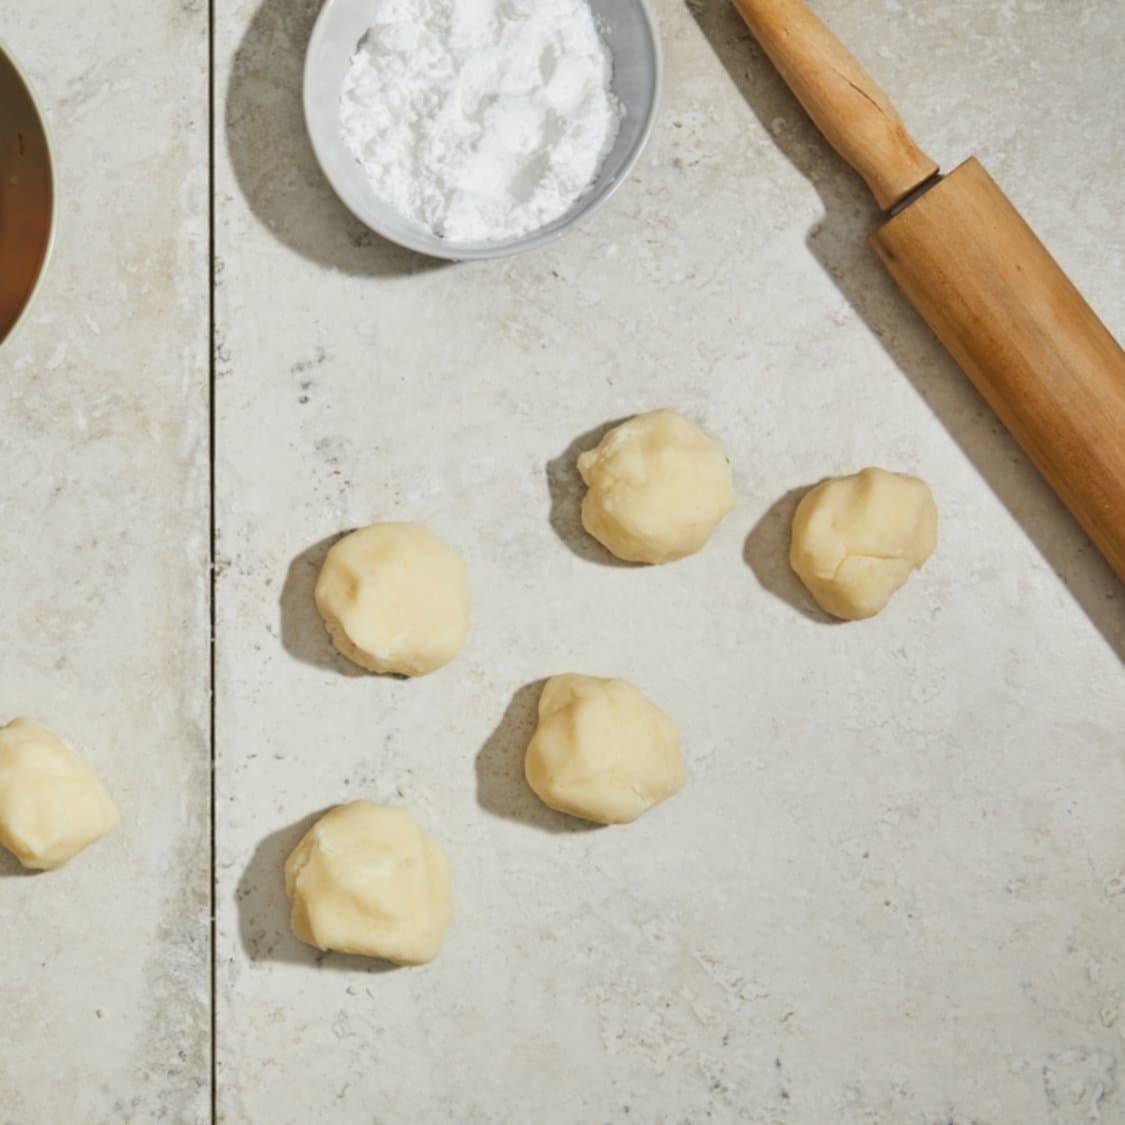 https://fleishigs.com/images/mobile-app/recipes/1865-list-potato-dough.jpg